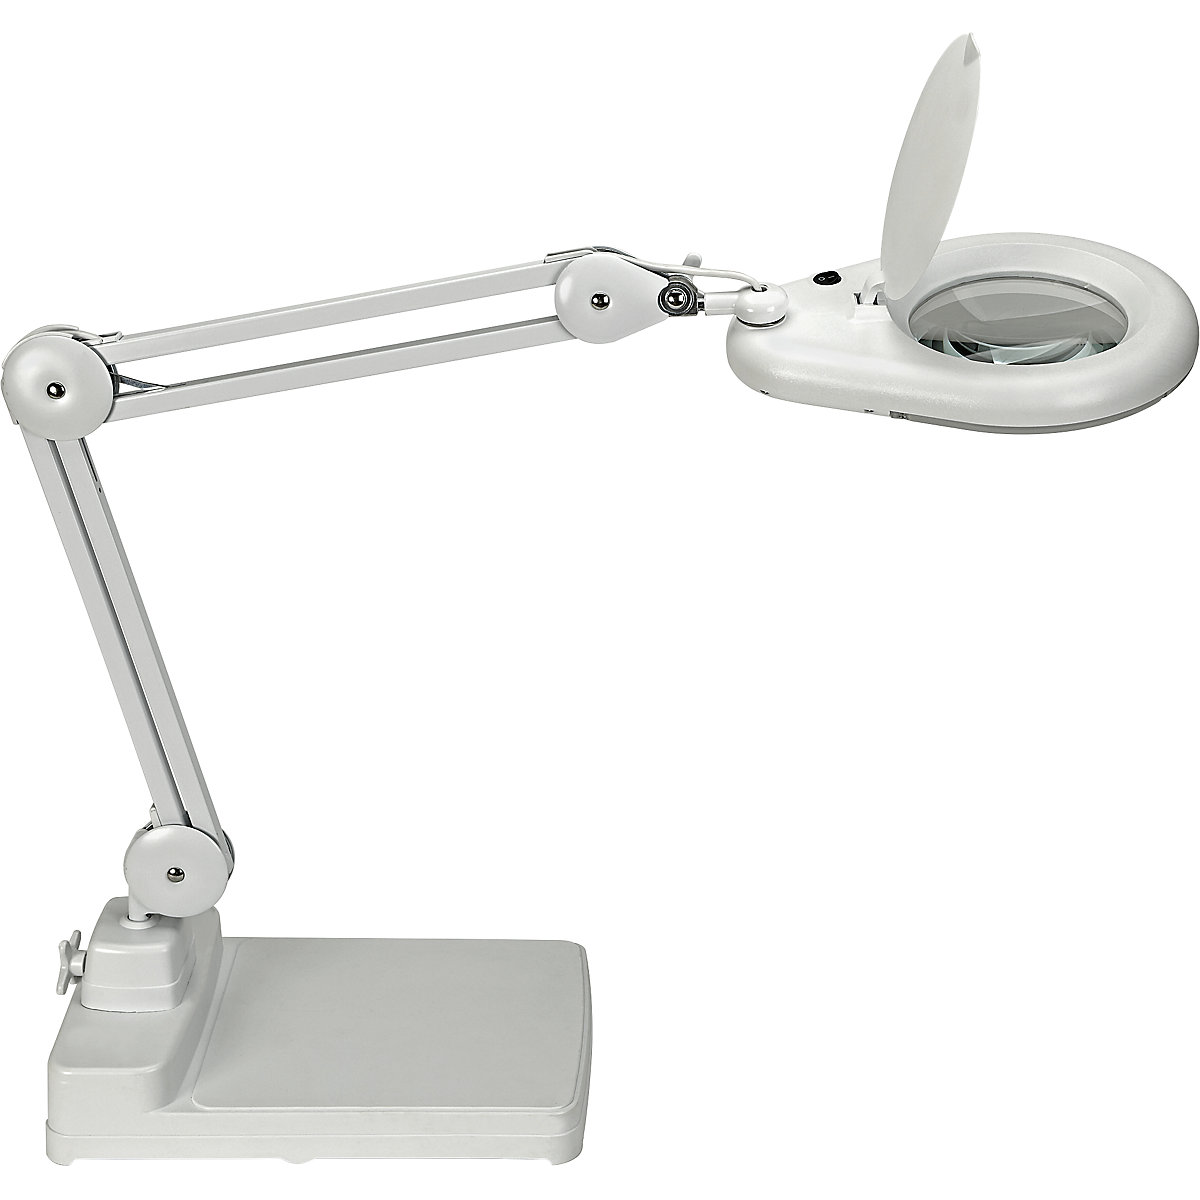 LED-loeplamp MAULviso – MAUL, armlengte 310 mm, met voet, wit-4